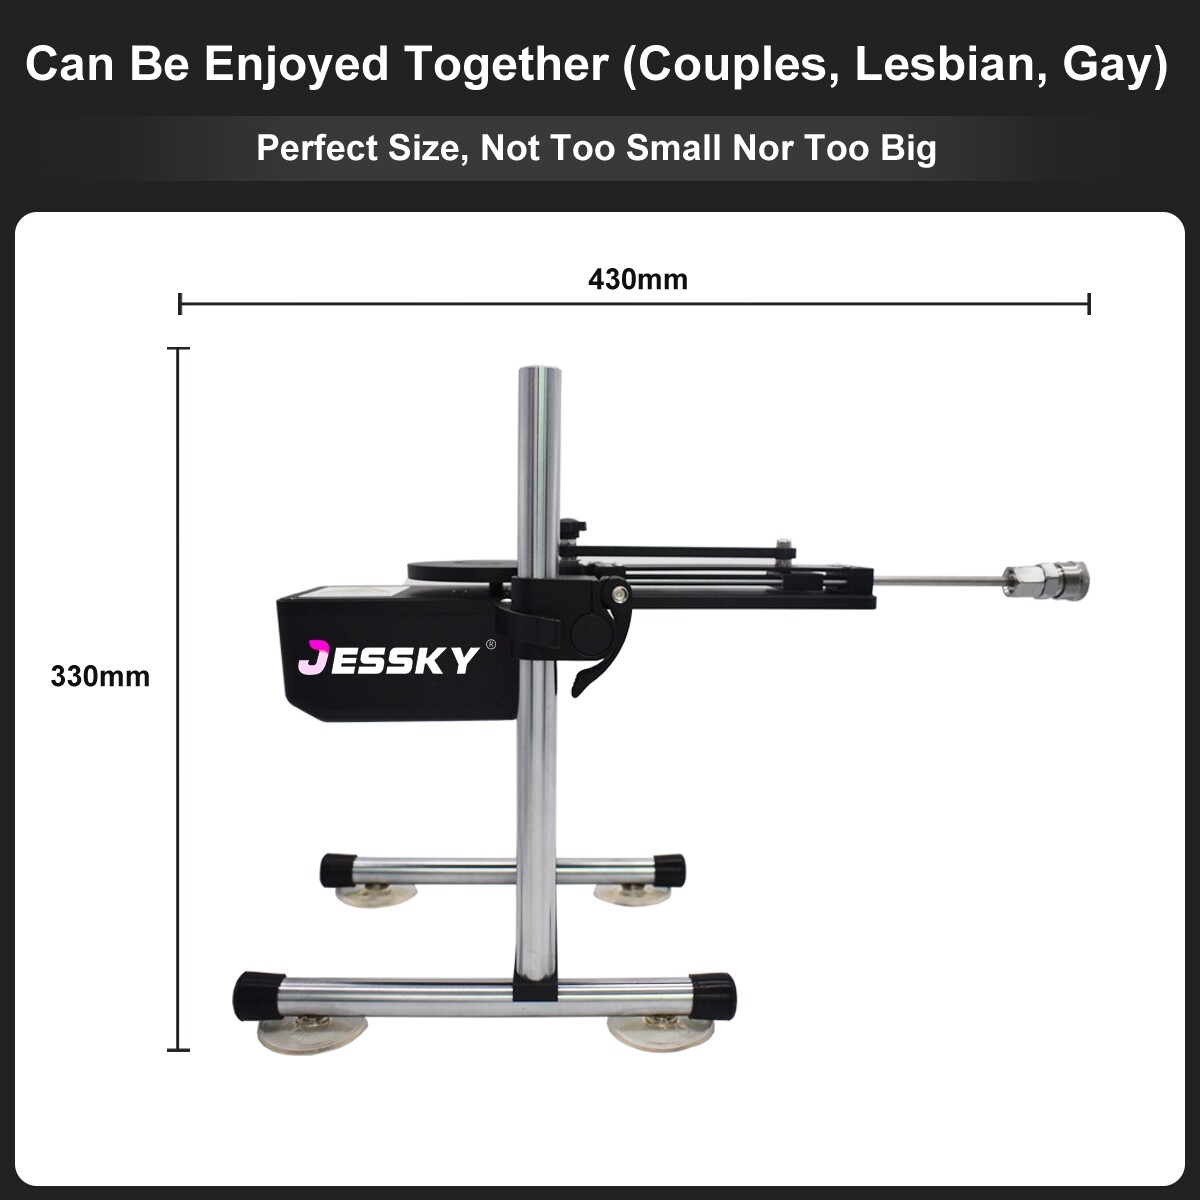 Máquina de sexo Premium inalámbrica Jessky New con control remoto y 4 piezas de accesorios